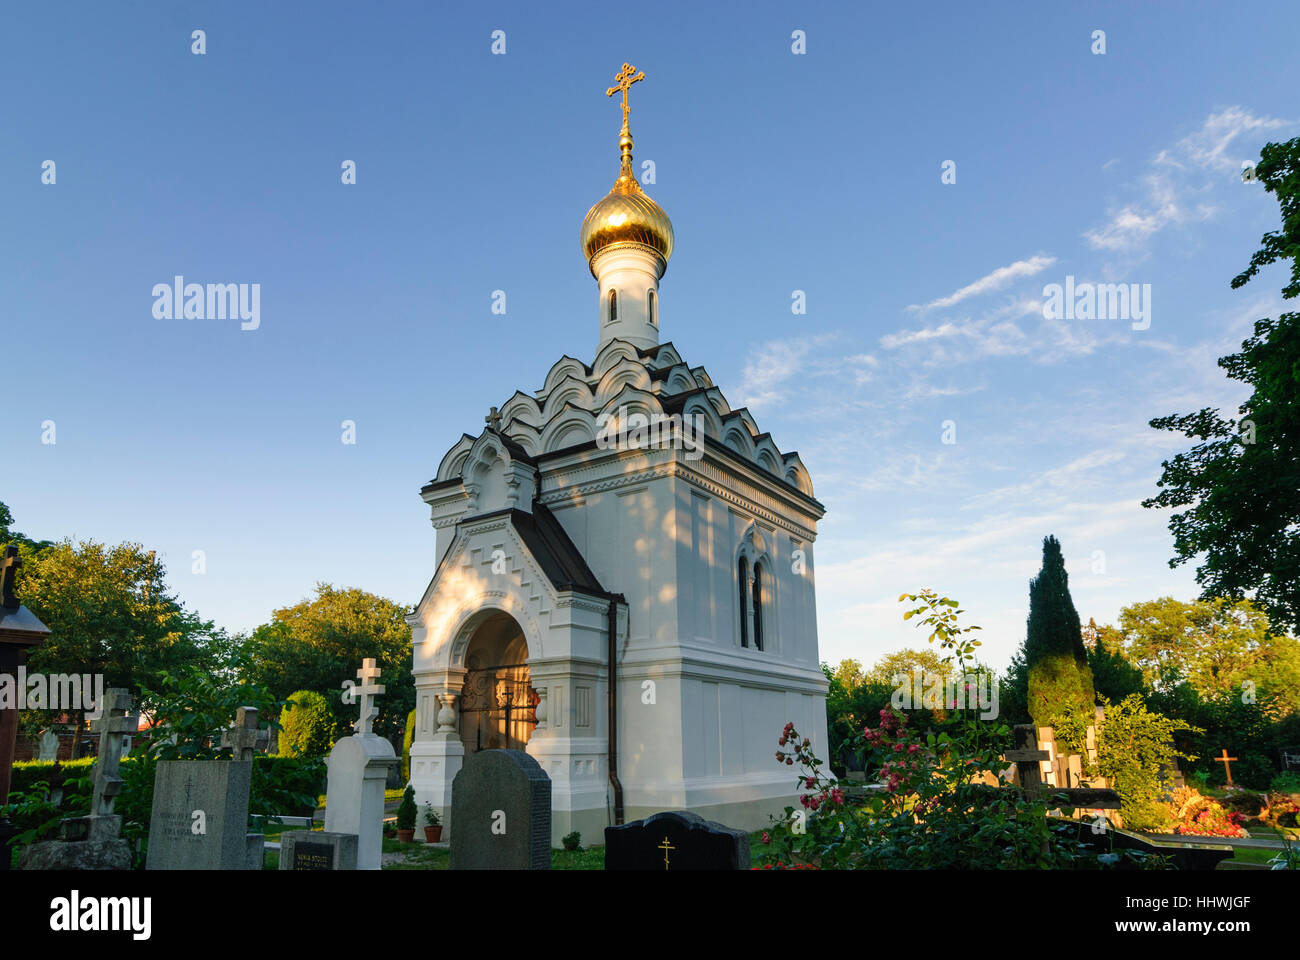 Wien, Vienne : cimetière central ; Église orthodoxe russe, 11, Wien, Autriche. Banque D'Images